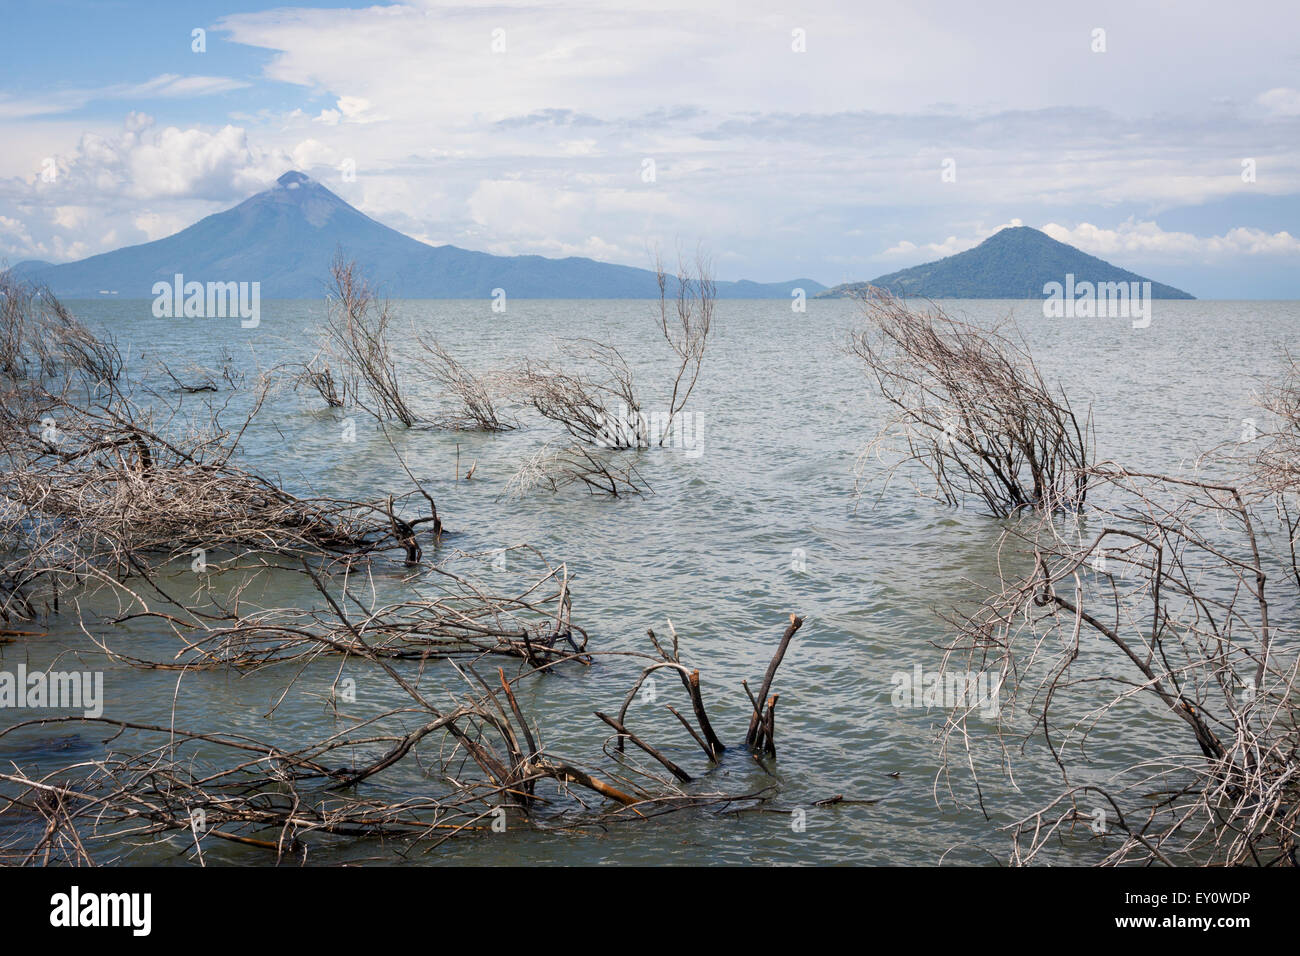 Volcans Momotombo et Momotombito du Lac de Managua, Nicaragua Banque D'Images